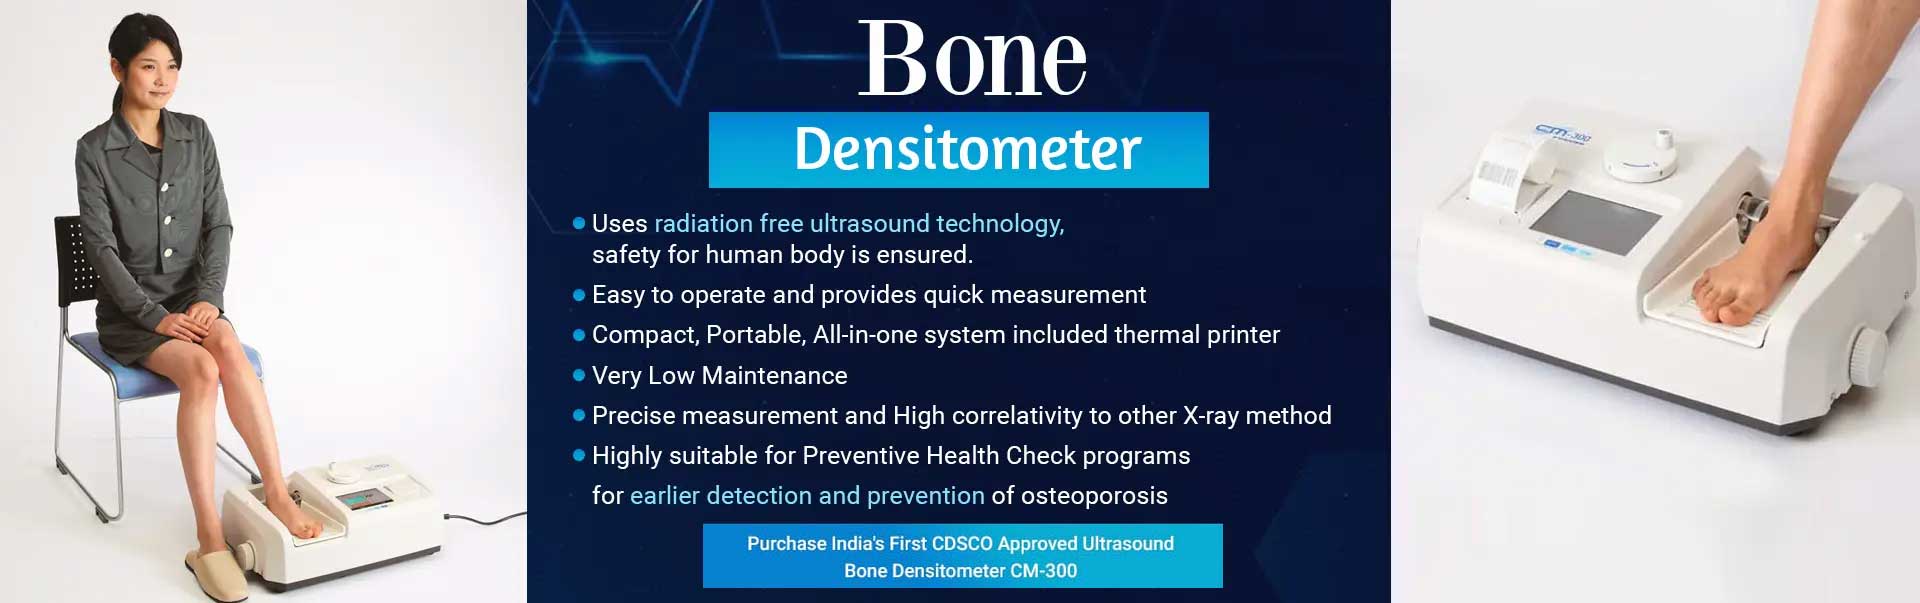 Bone Densitometer Manufacturers in Pondicherry